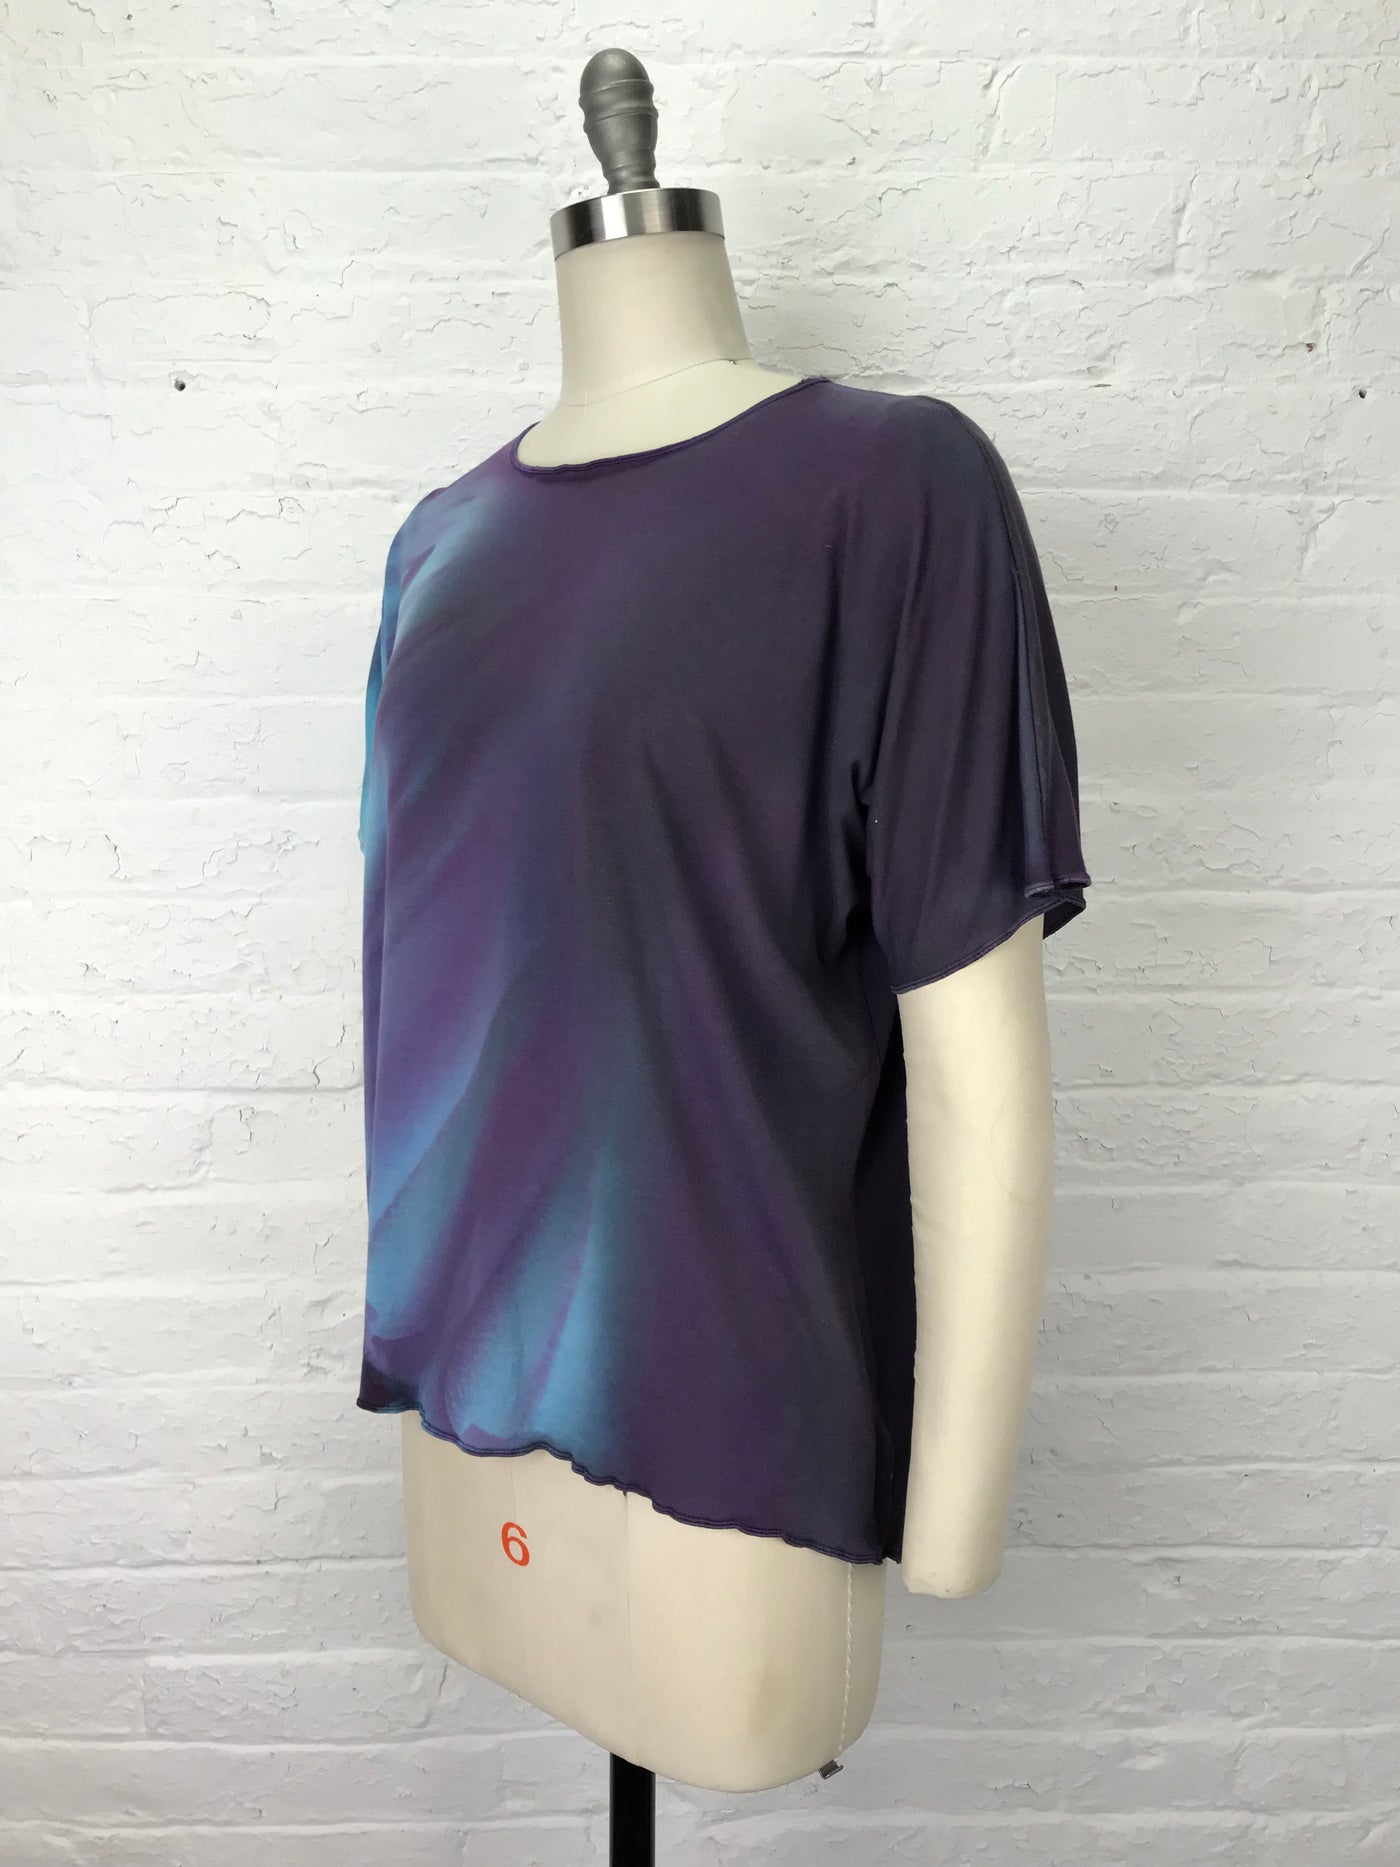 Juni Short Sleeve Shirt in Aurora in Violet - One size